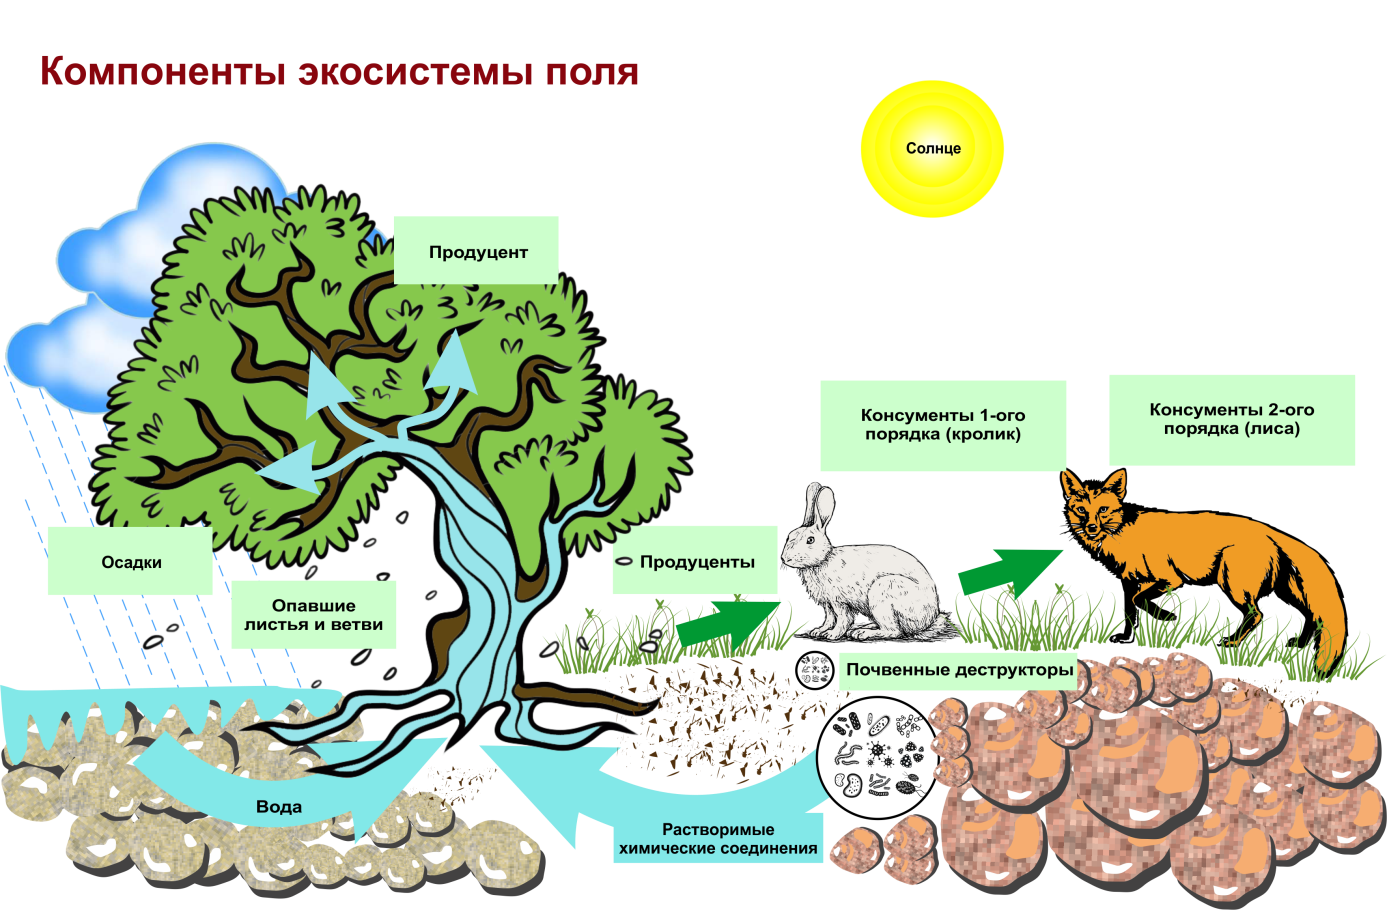 Цепочка биологического круговорота. Структура биогеоценоза и экосистемы. Схема трофической структуры биоценоза широколиственного леса. Строение биогеоценоза экосистемы. Схема состава компонентов экосистемы.